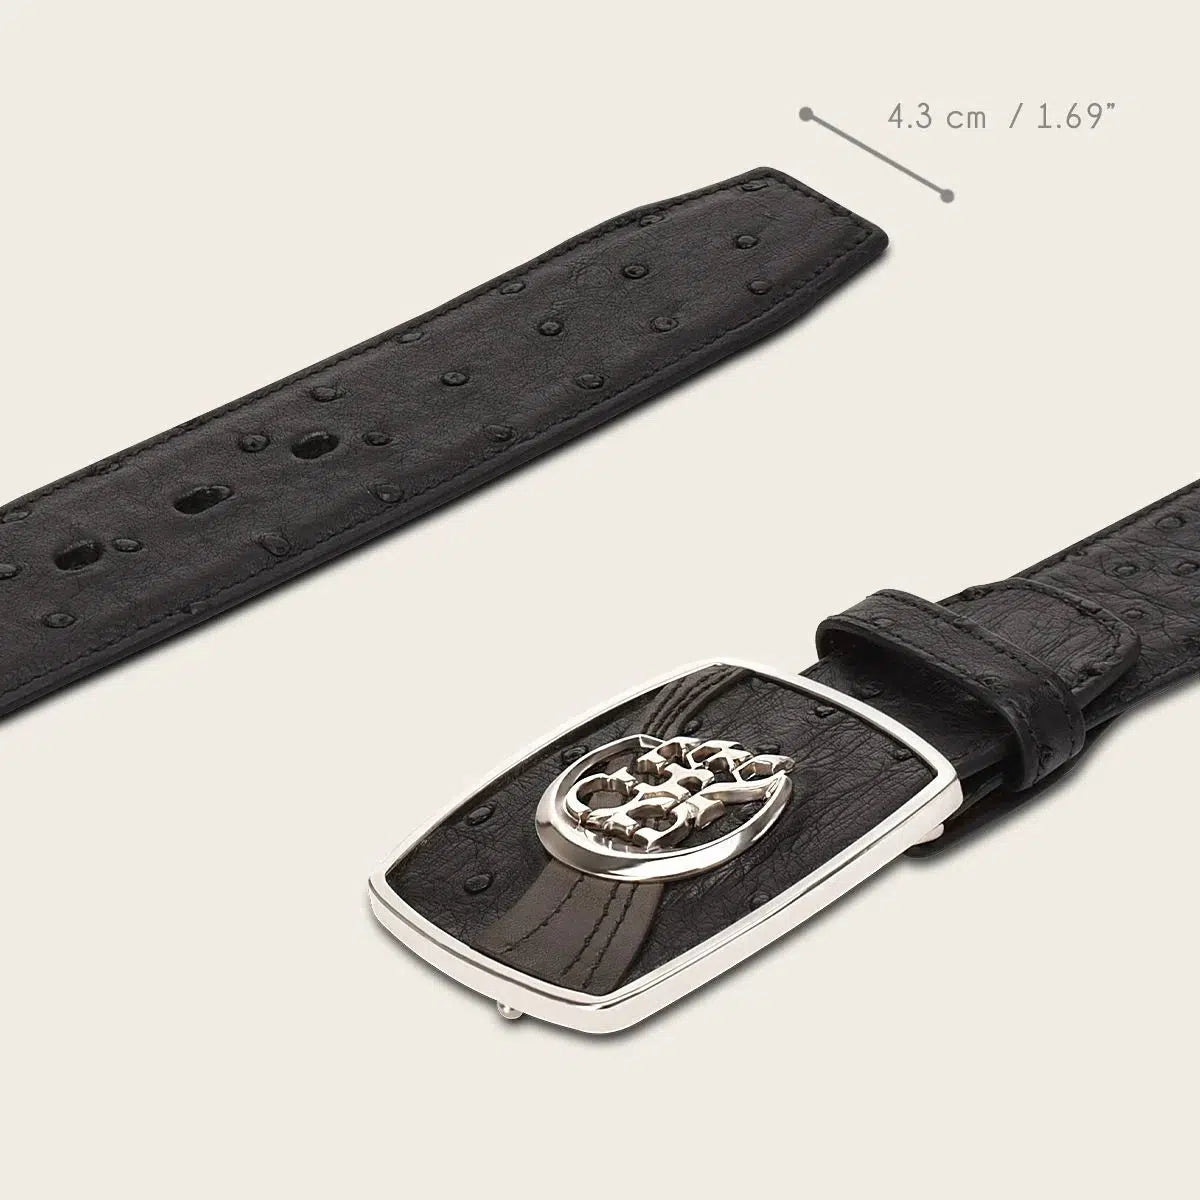 CV499A1 - Cuadra black western fashion Ostrich belt for men-Kuet.us